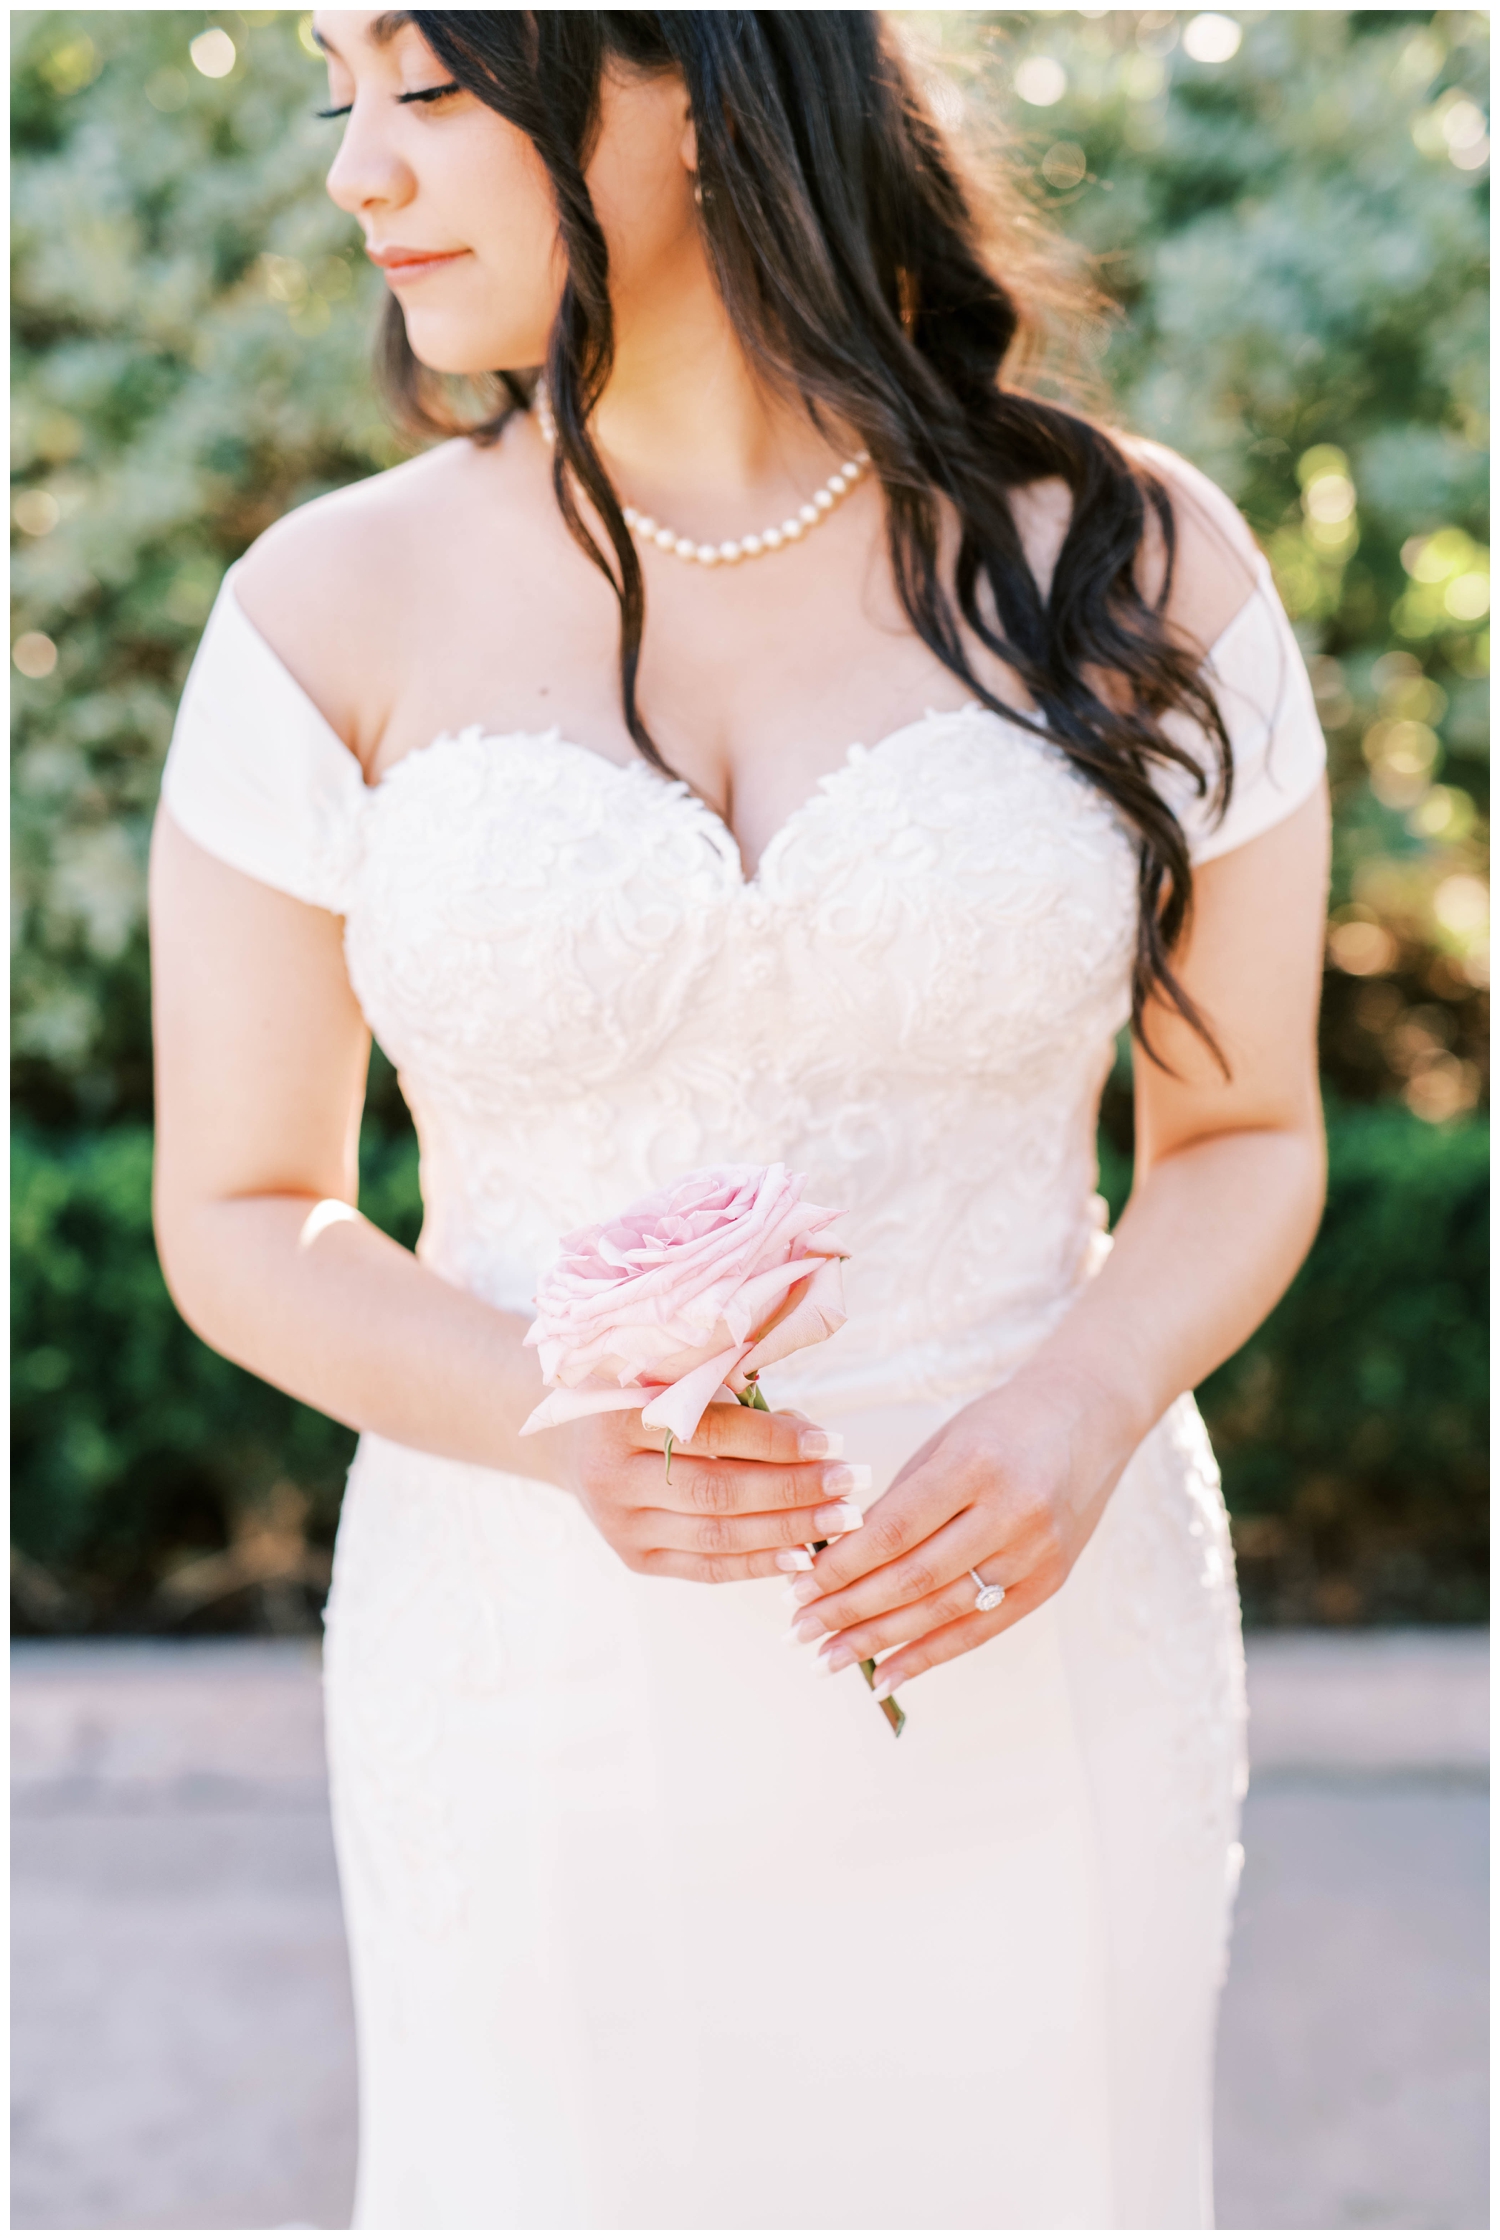 detailed portrait bride's hands holding pink rose